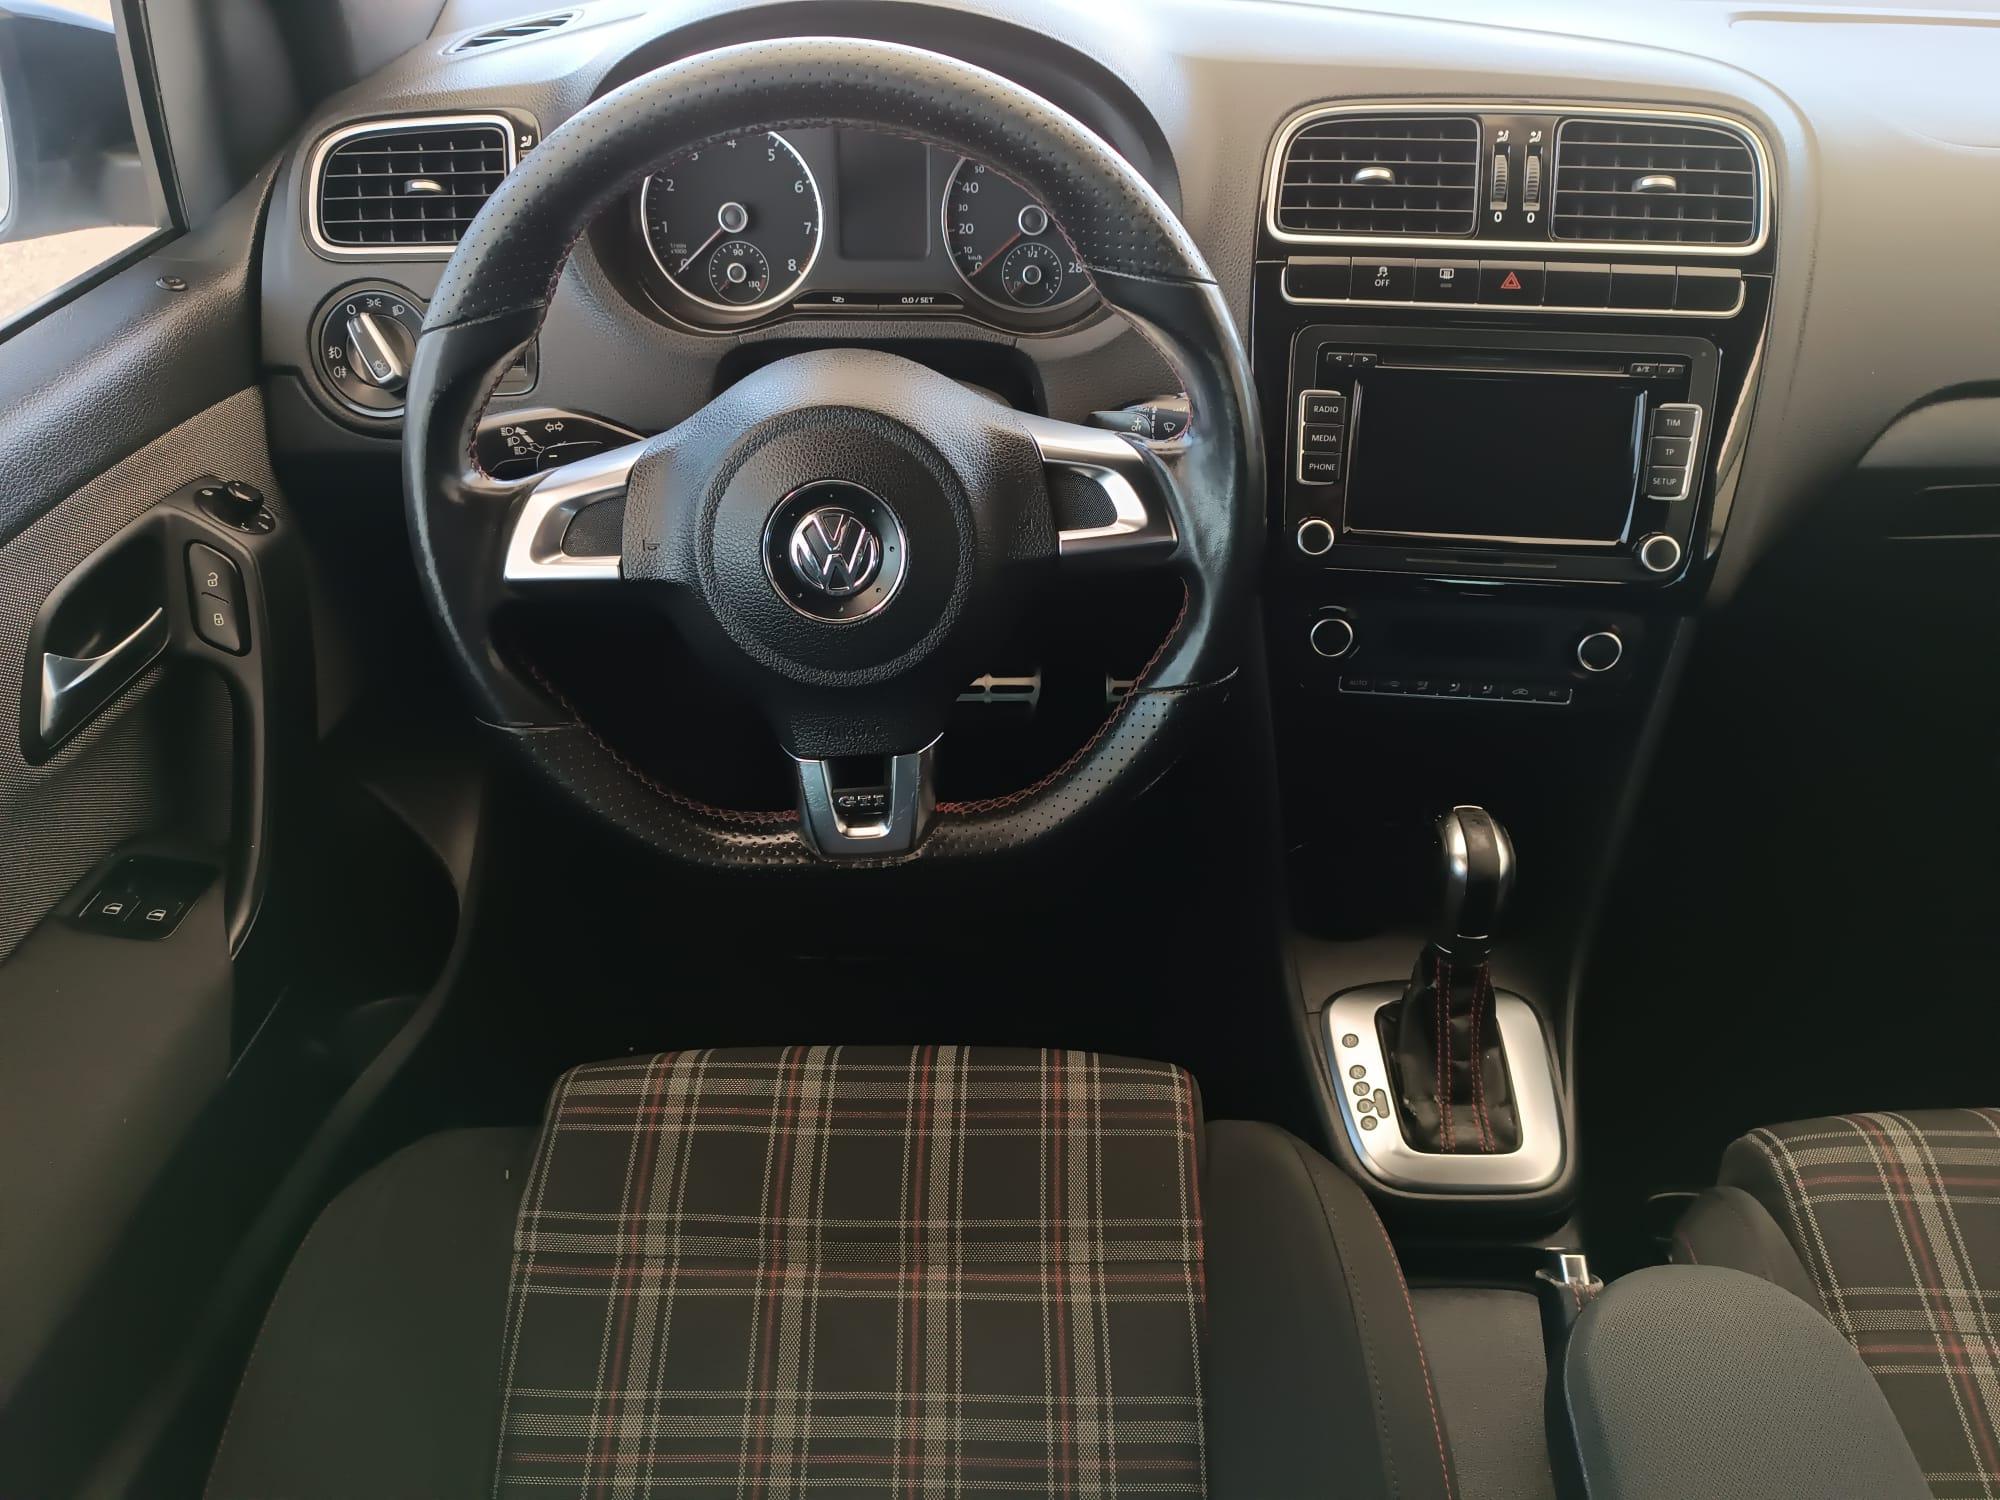 Volkswagen Polo 1.4 GTI 2012 Cambio Dsg Euro 5 Garanzia Finanziamento